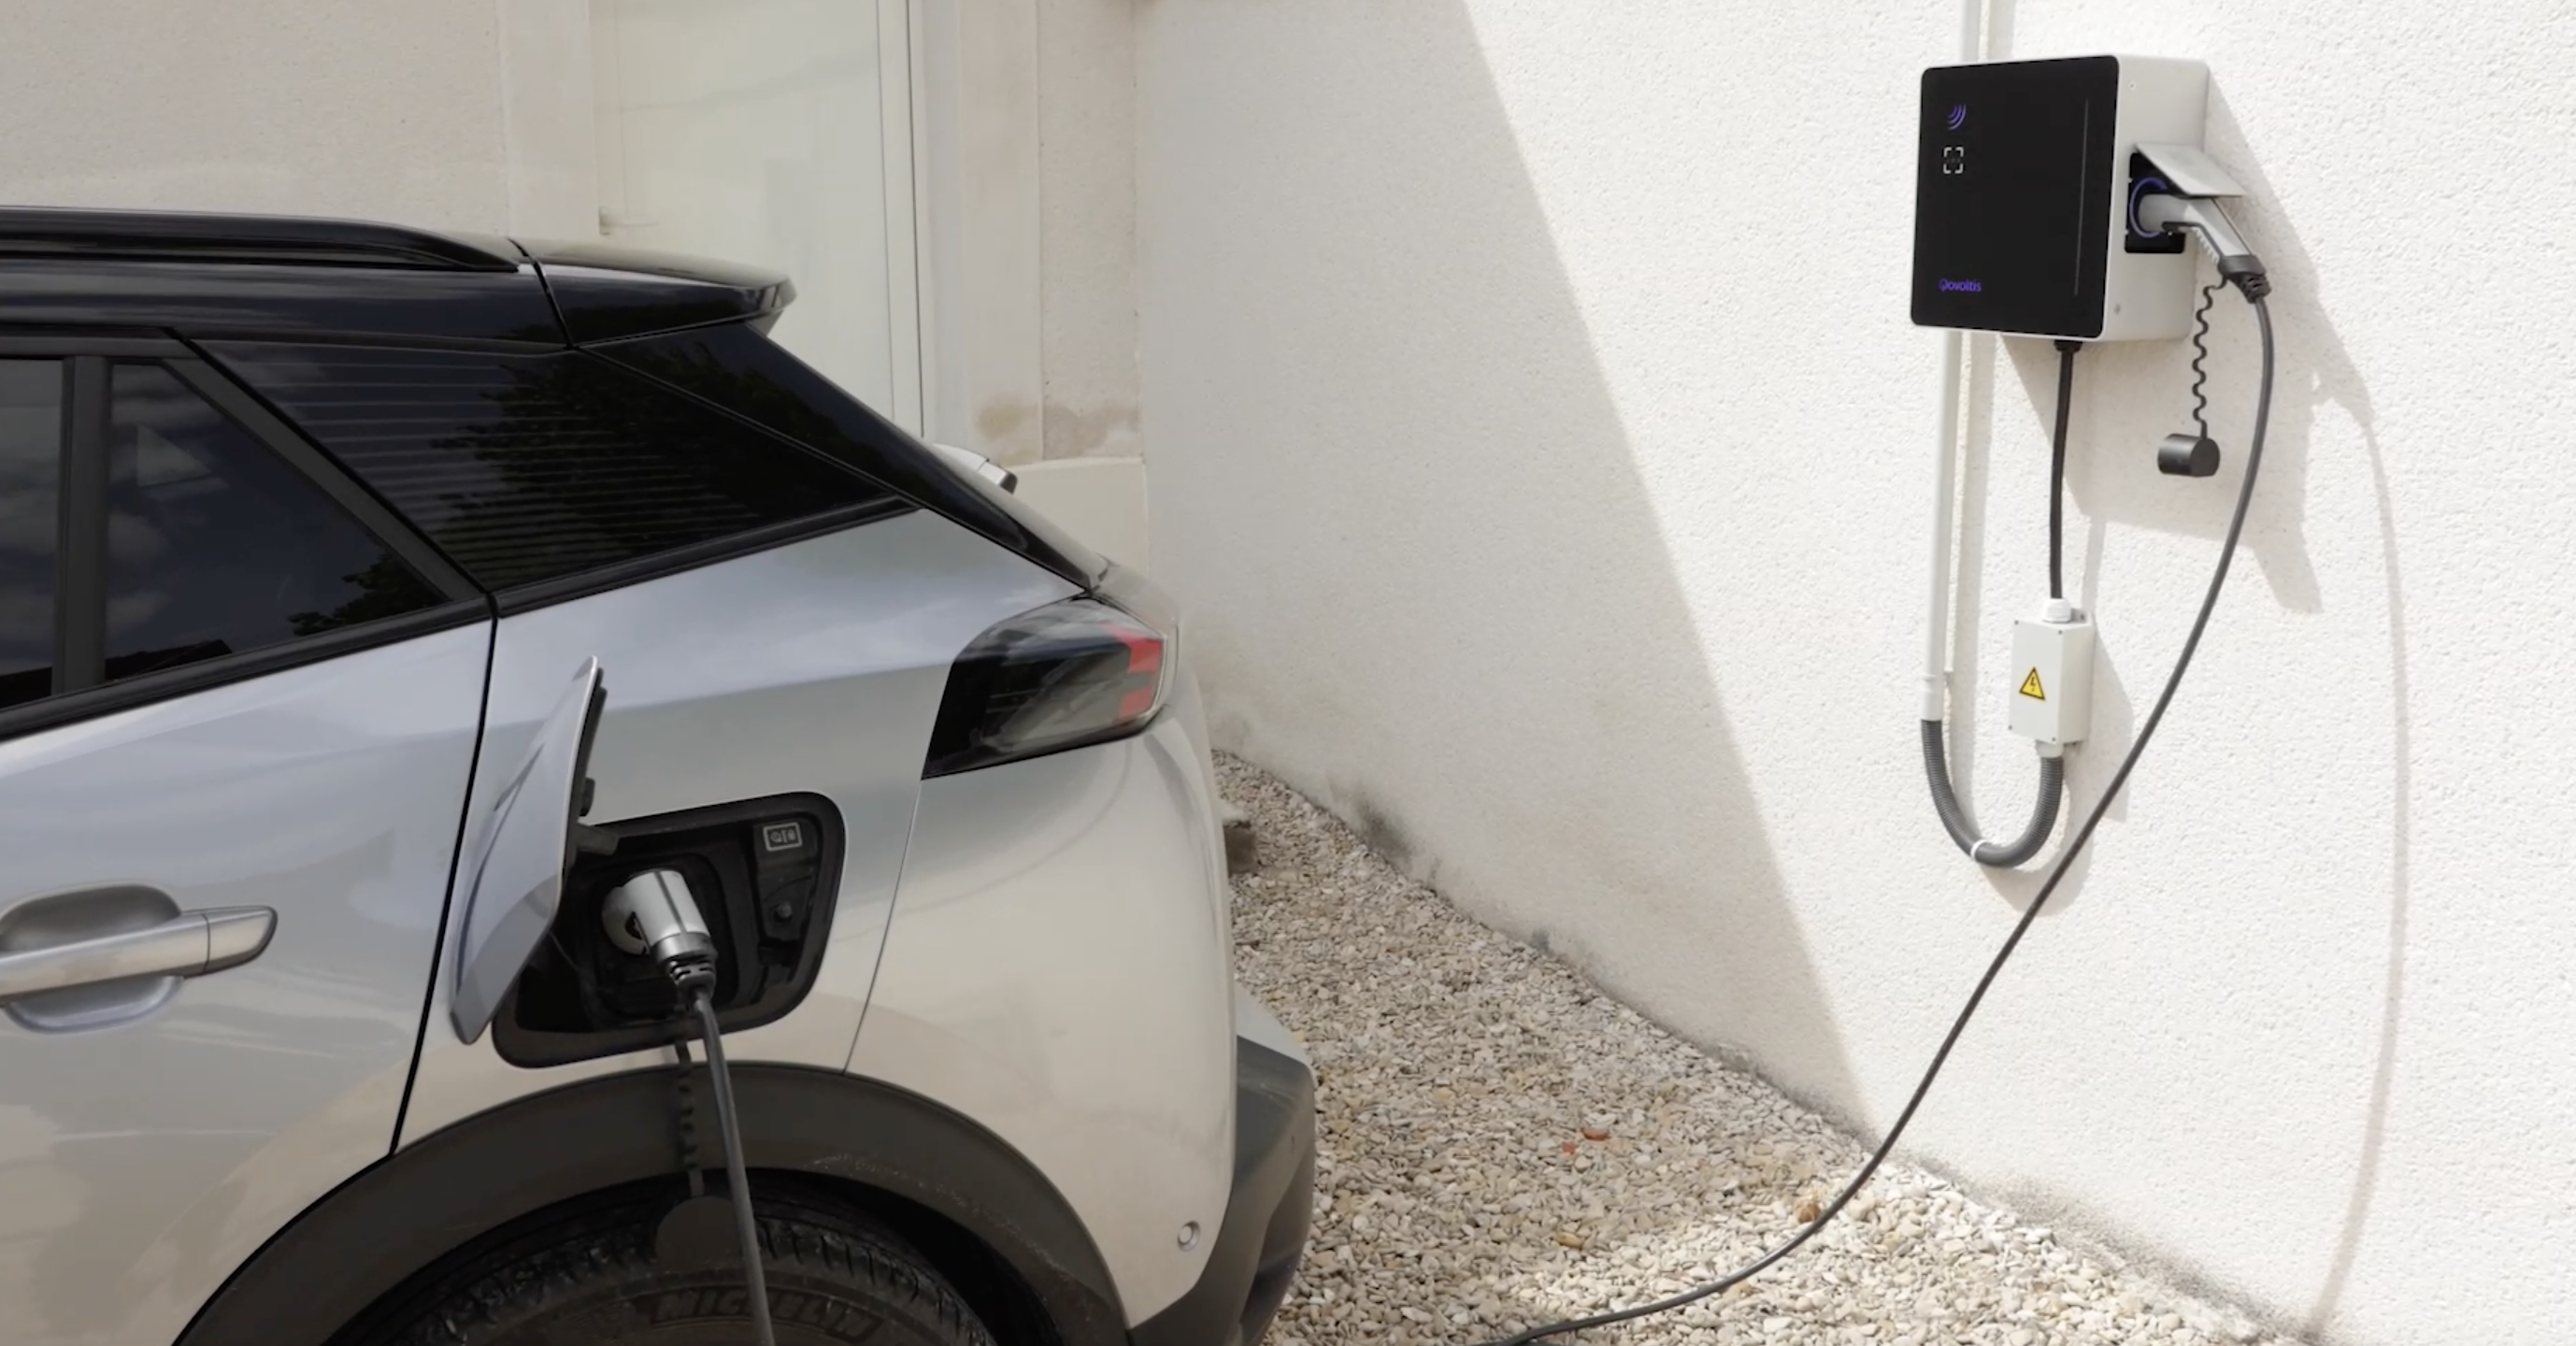 Borne de recharge 7,4 kW : pour quel type de voiture électrique ?